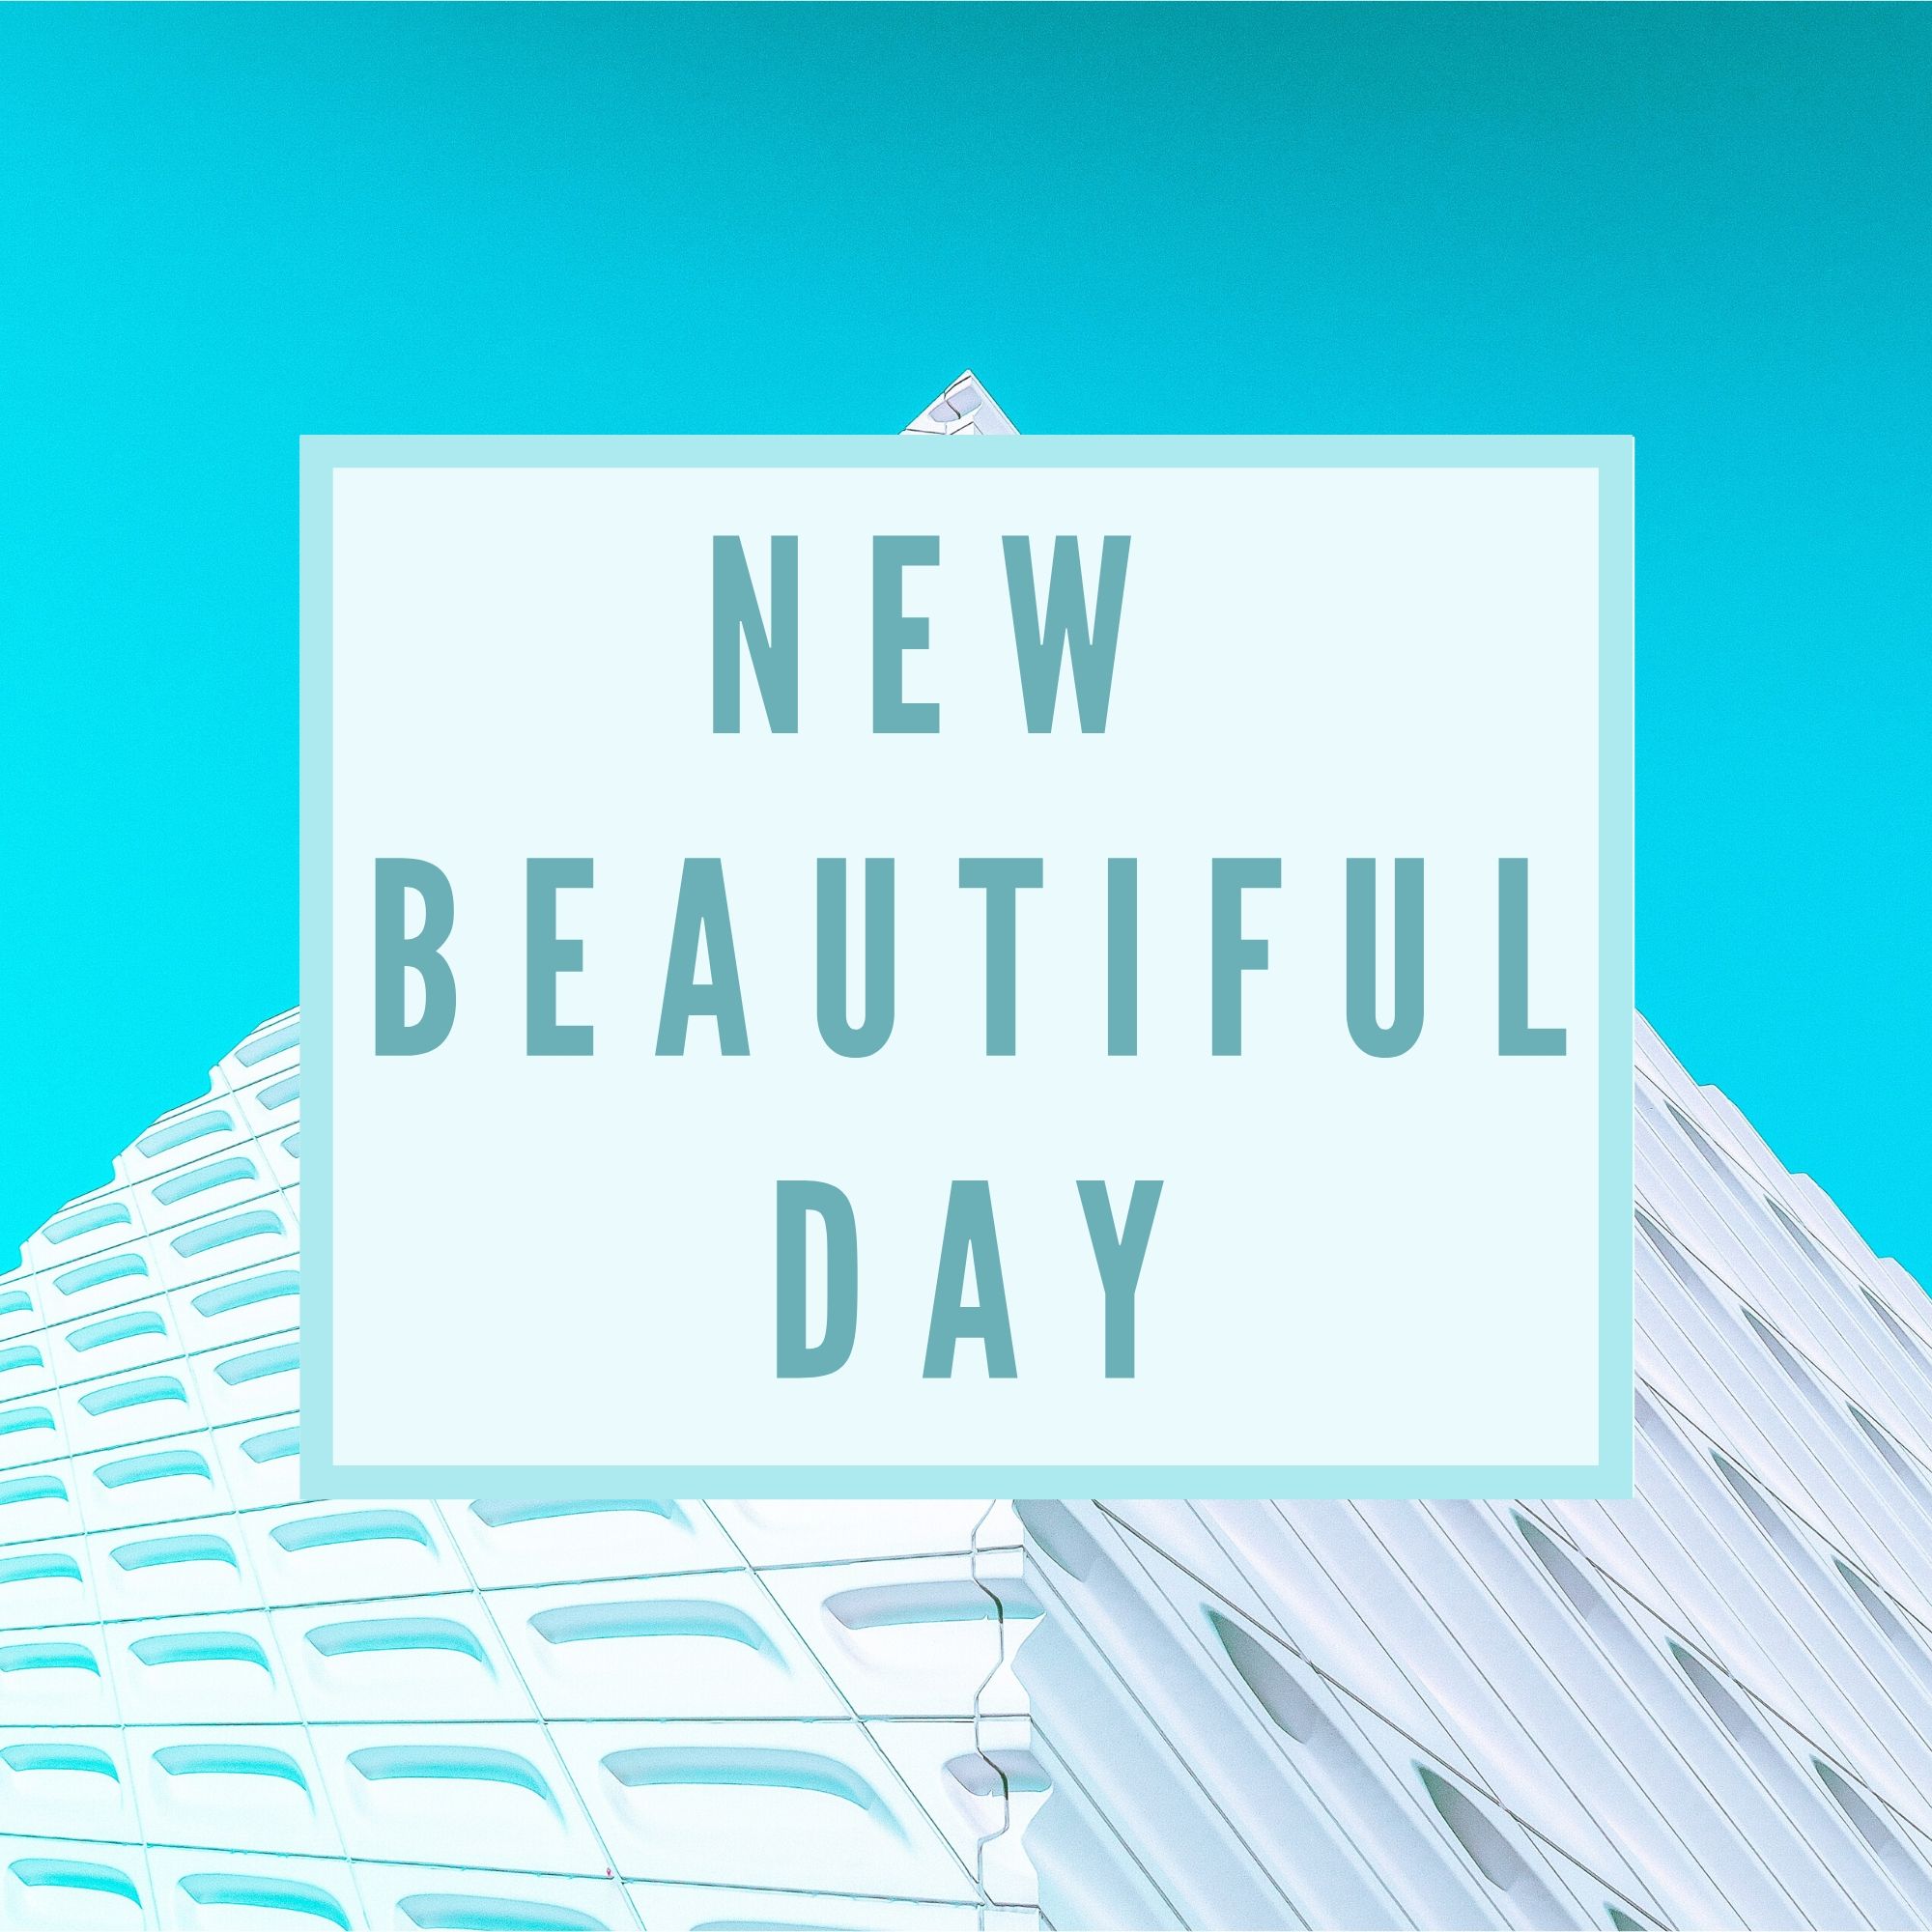 New Beautiful Day